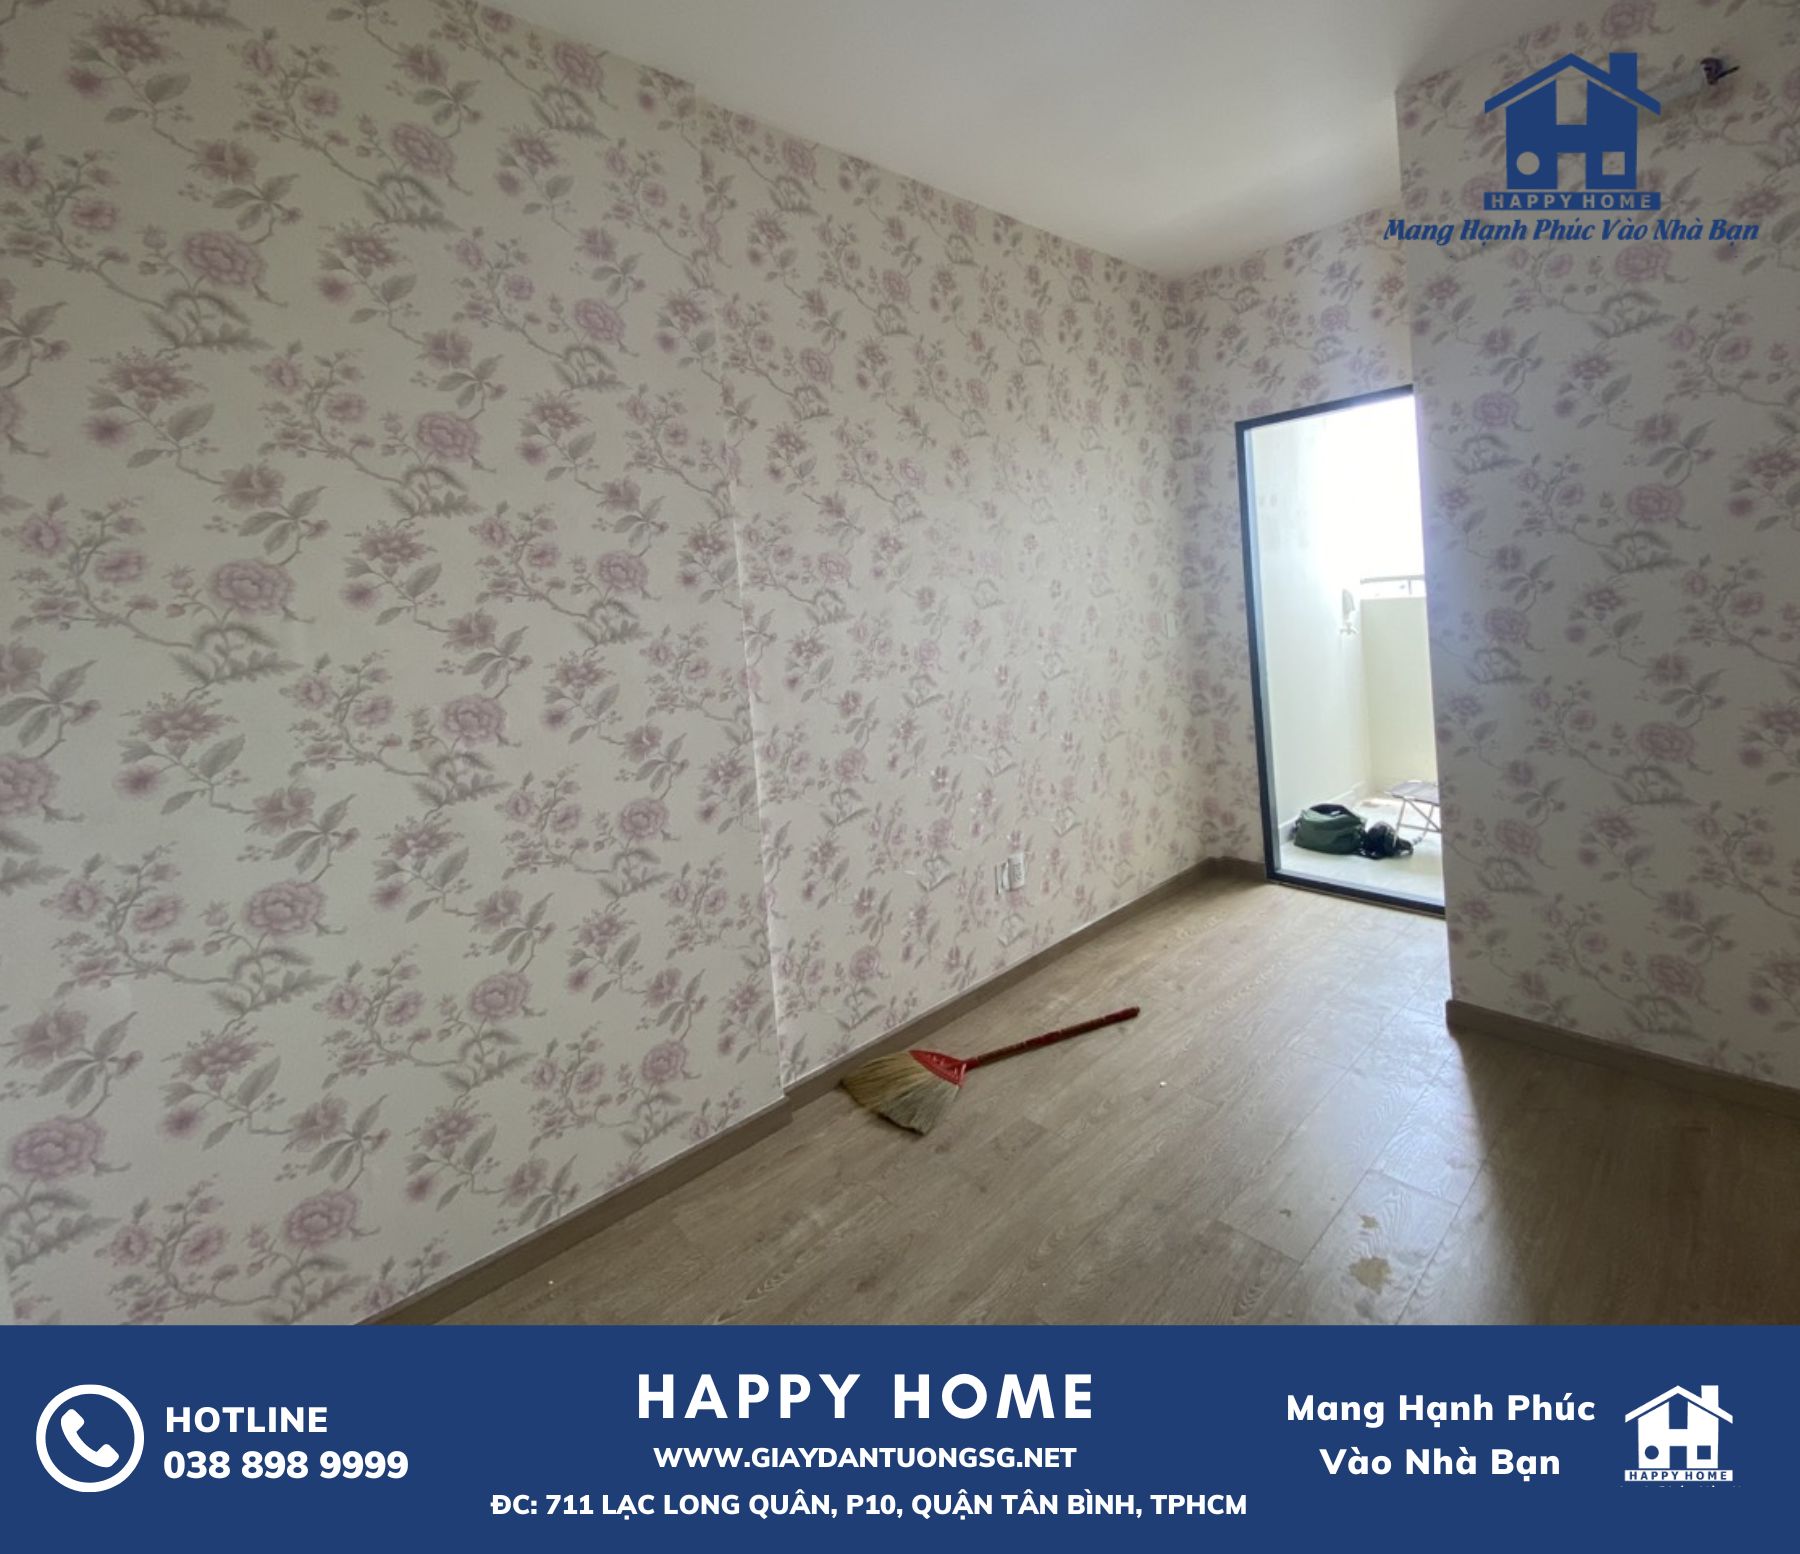 Chinh phục không gian sống với giấy dán tường Hàn Quốc của Happy Home